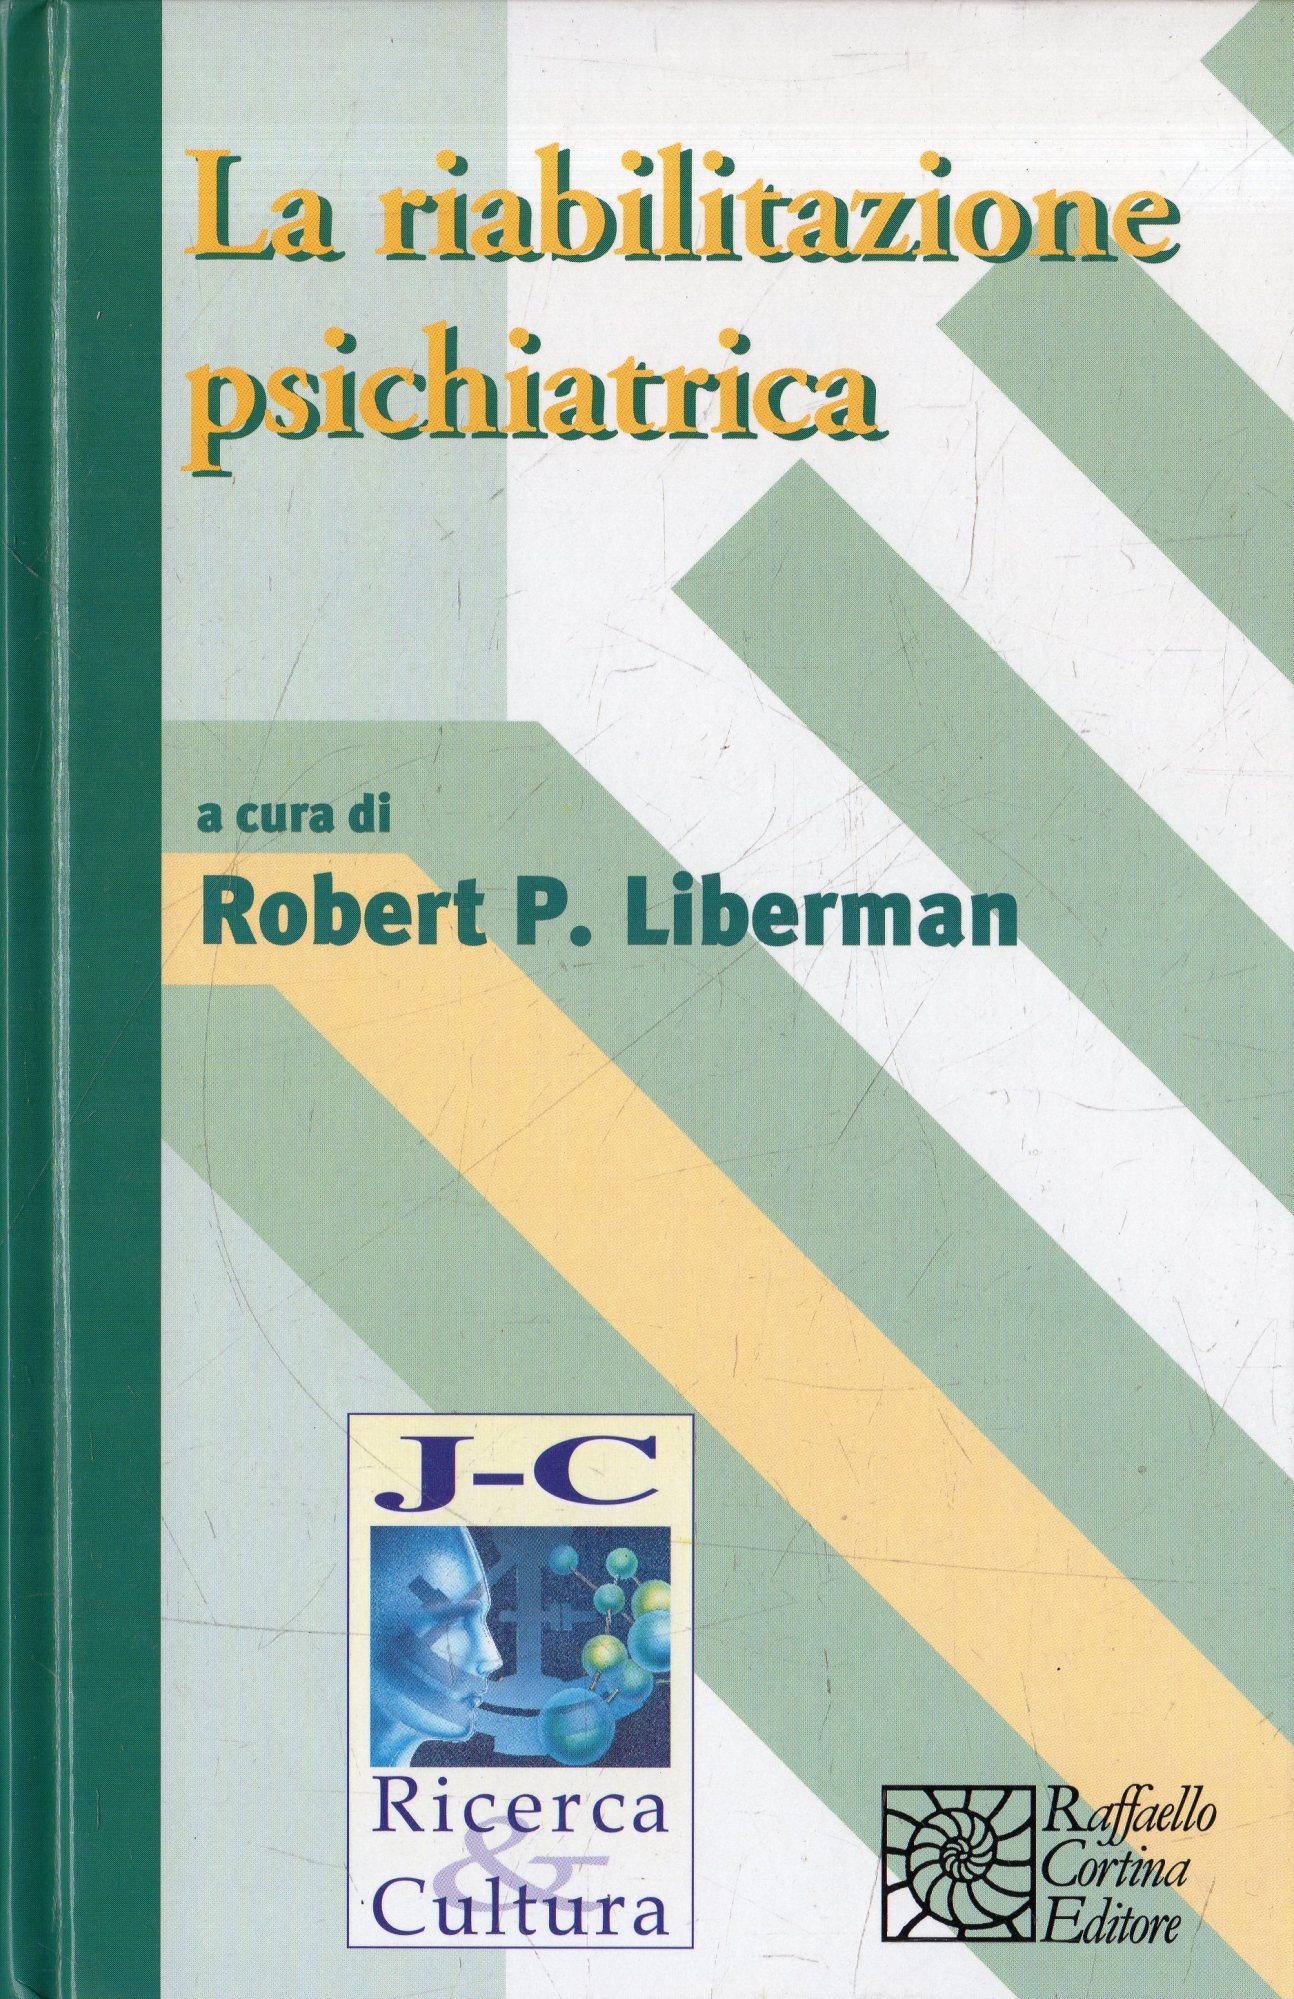 La riabilitazione psichiatrica - Liberman, Robert